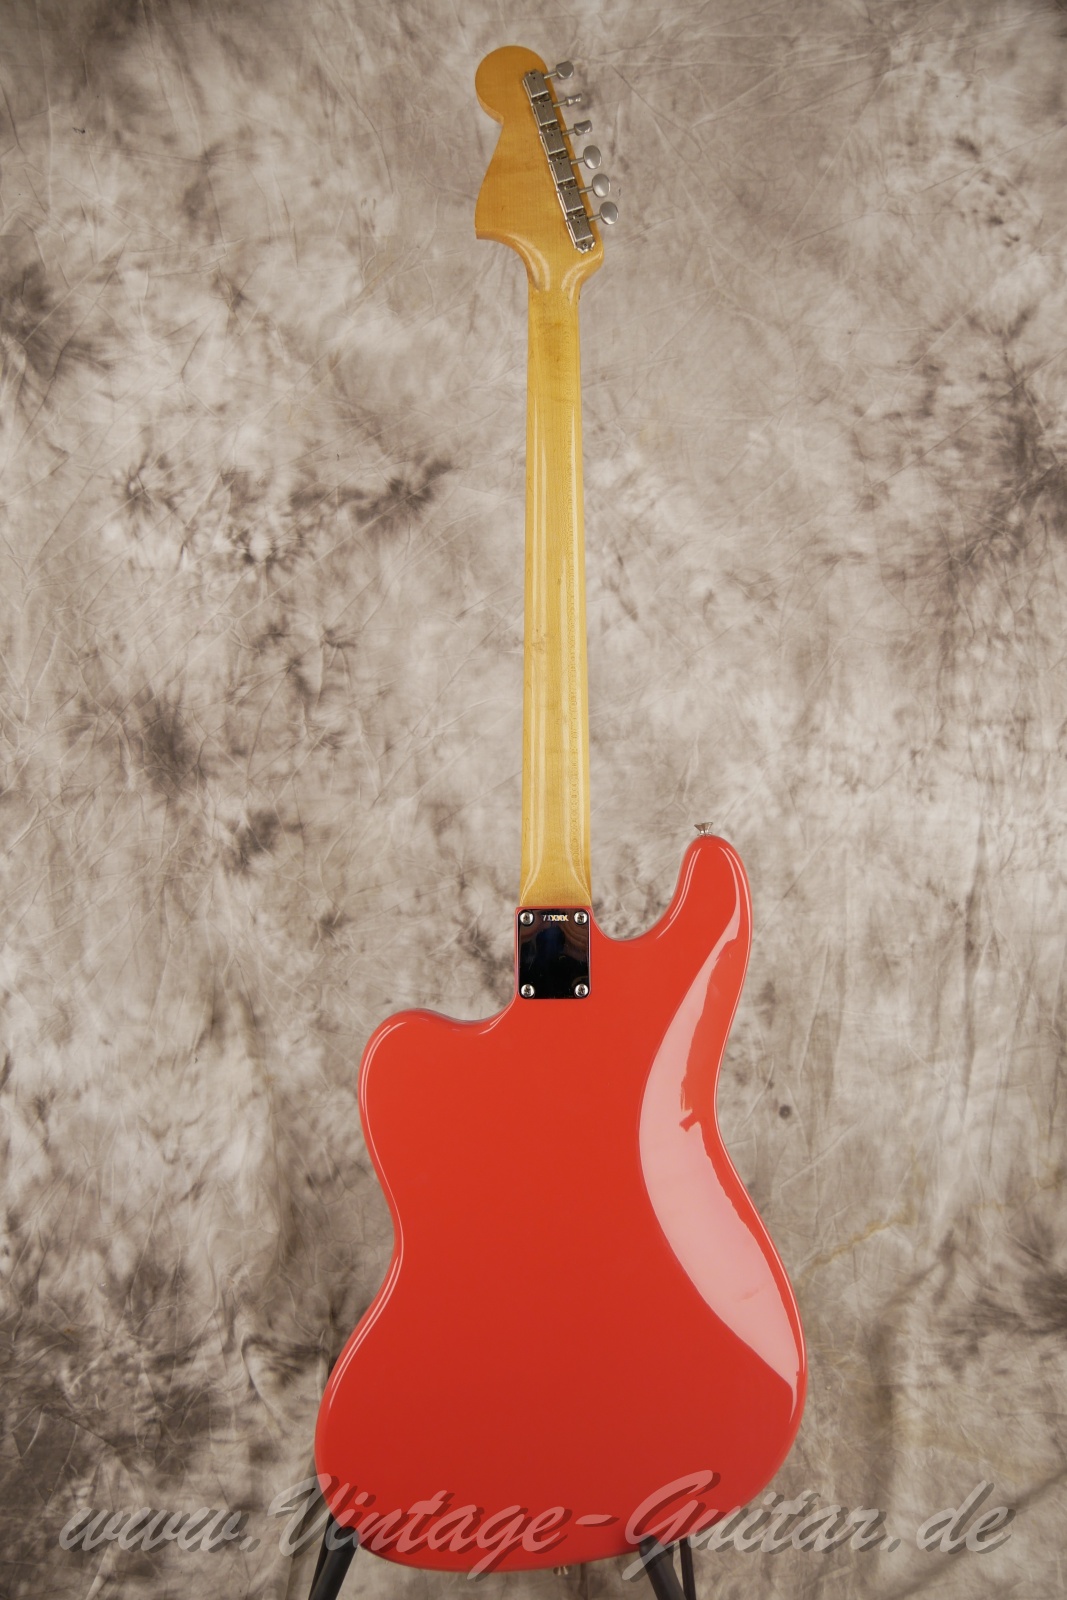 Fender_VI_Bass_Gitarre_Baujahr_1962_fiesta_red_refinished-002.jpg